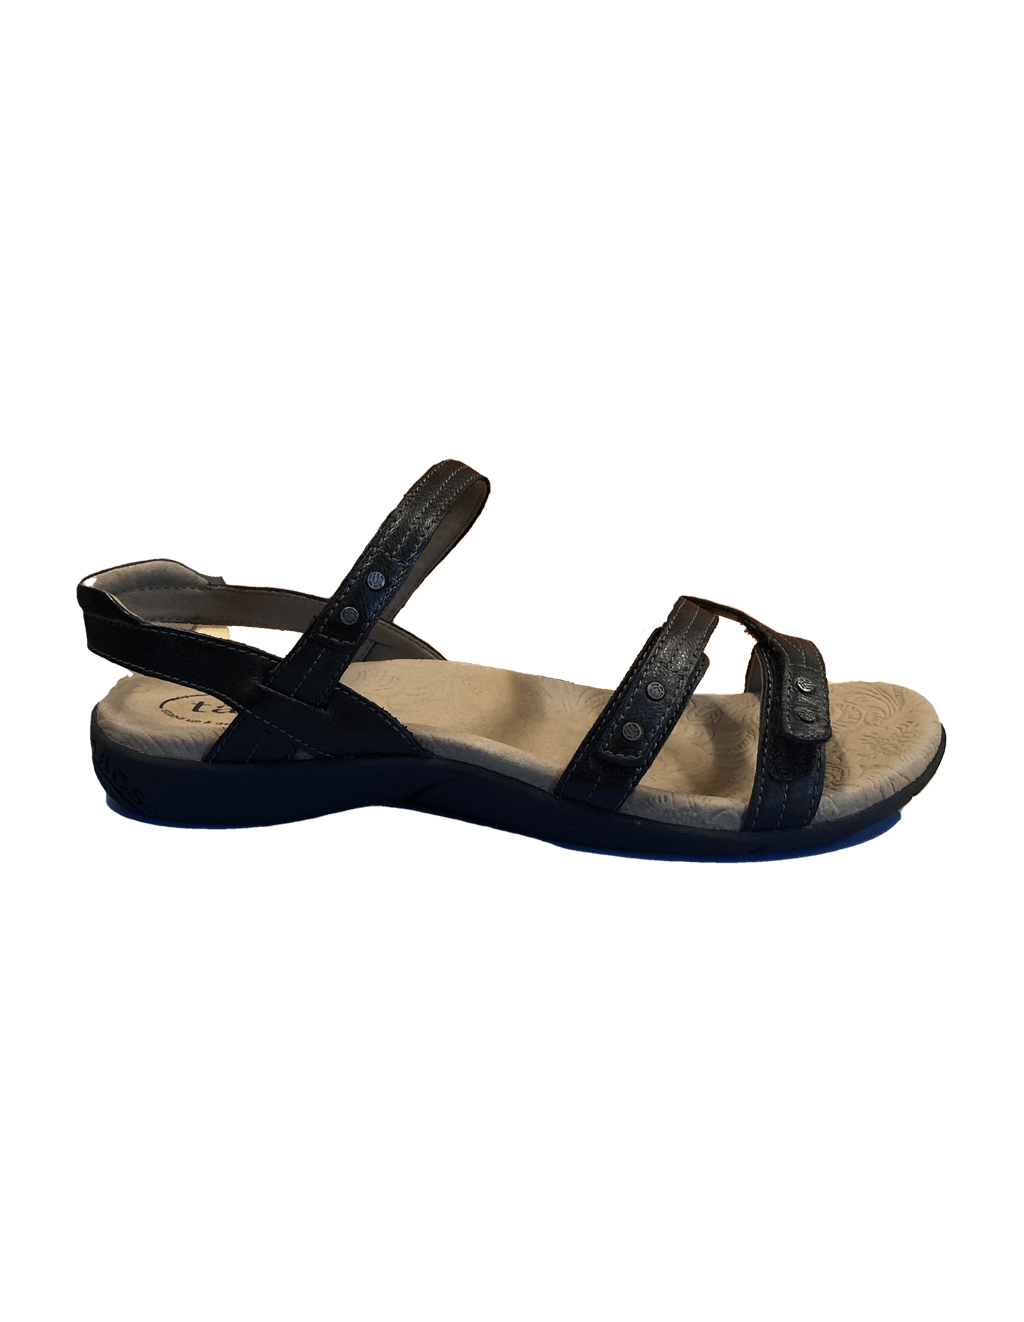 Taos Happy Black Sandals - Raben Footwear